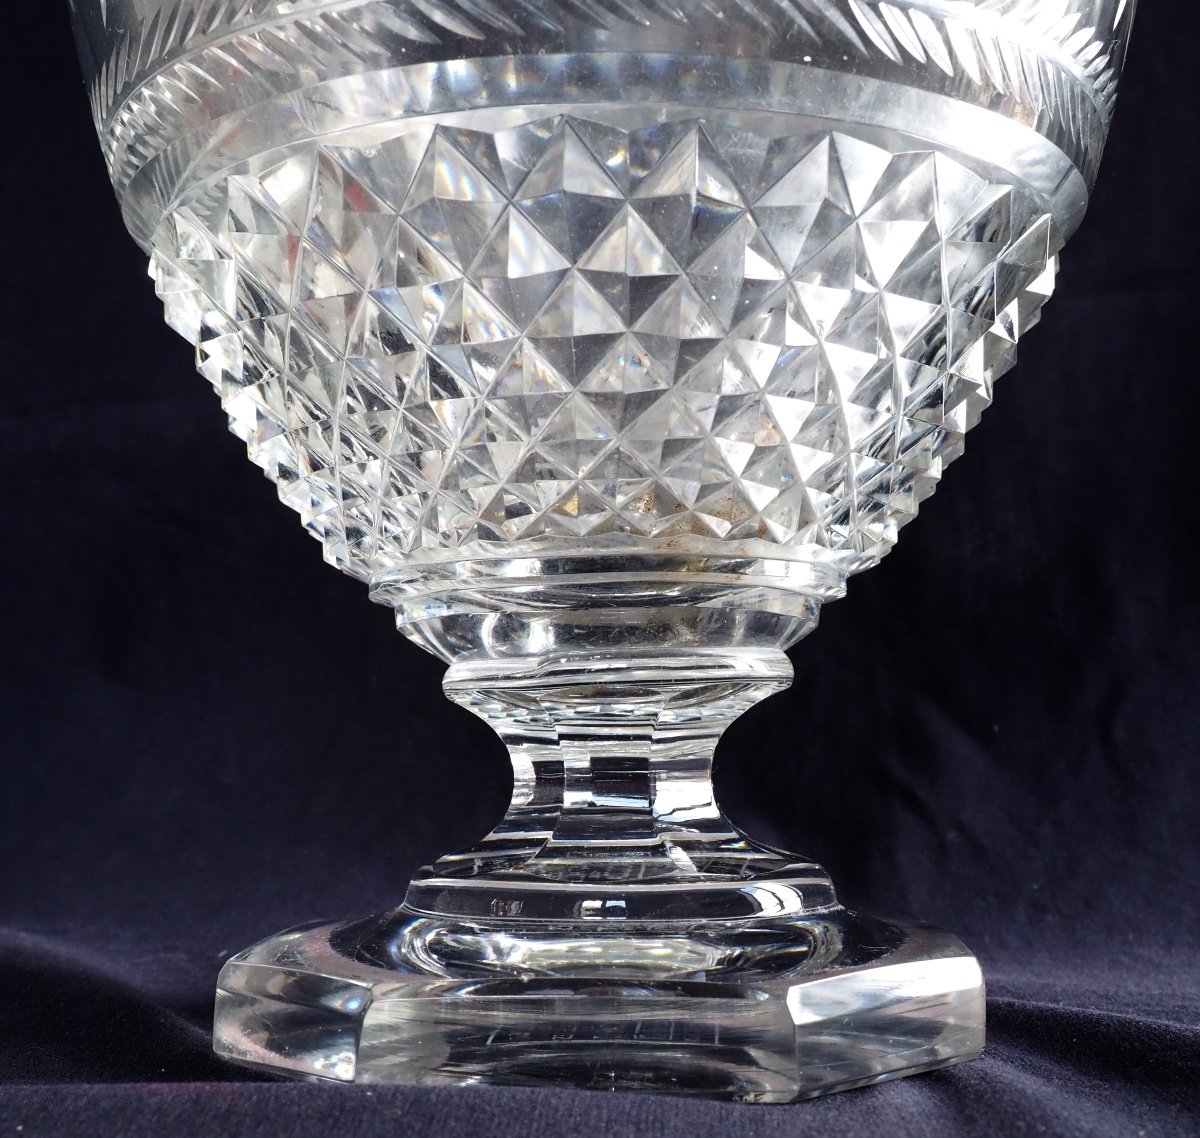 Grand Vase En Cristal De Baccarat De Style Charles X Finement Taillé, Cachet Du Musée-photo-2